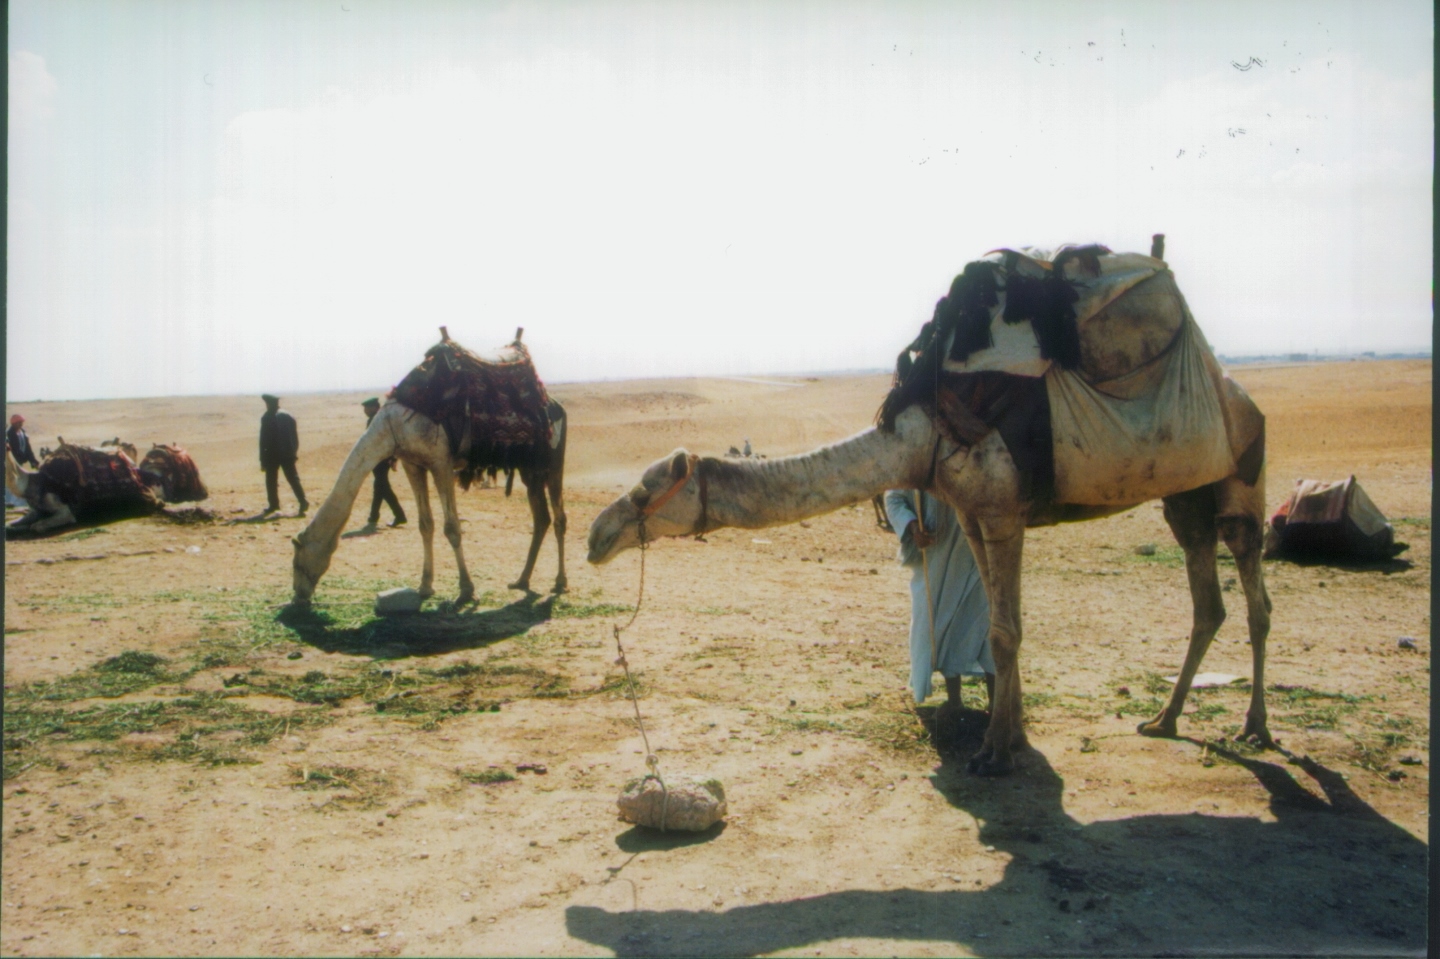 Camels at Pyramids of Giza Egypt 1998